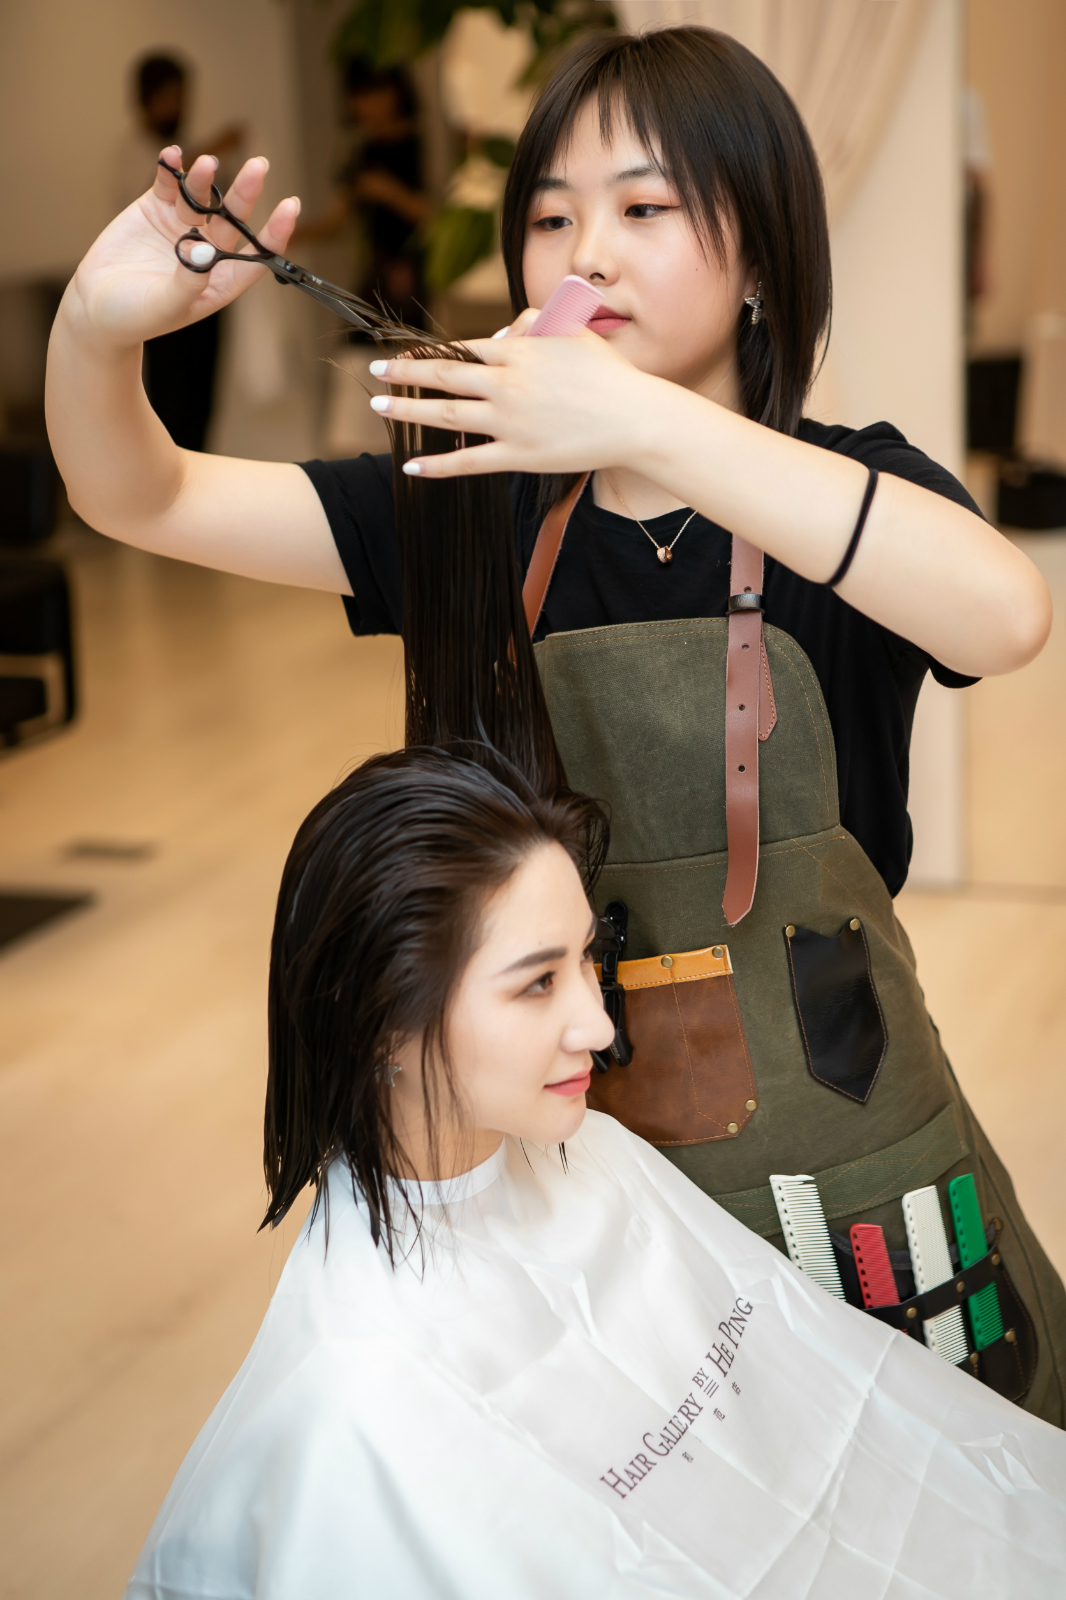 独树一帜,邀请众多具有艺术教育背景和独特审美的女性发型师作为团队